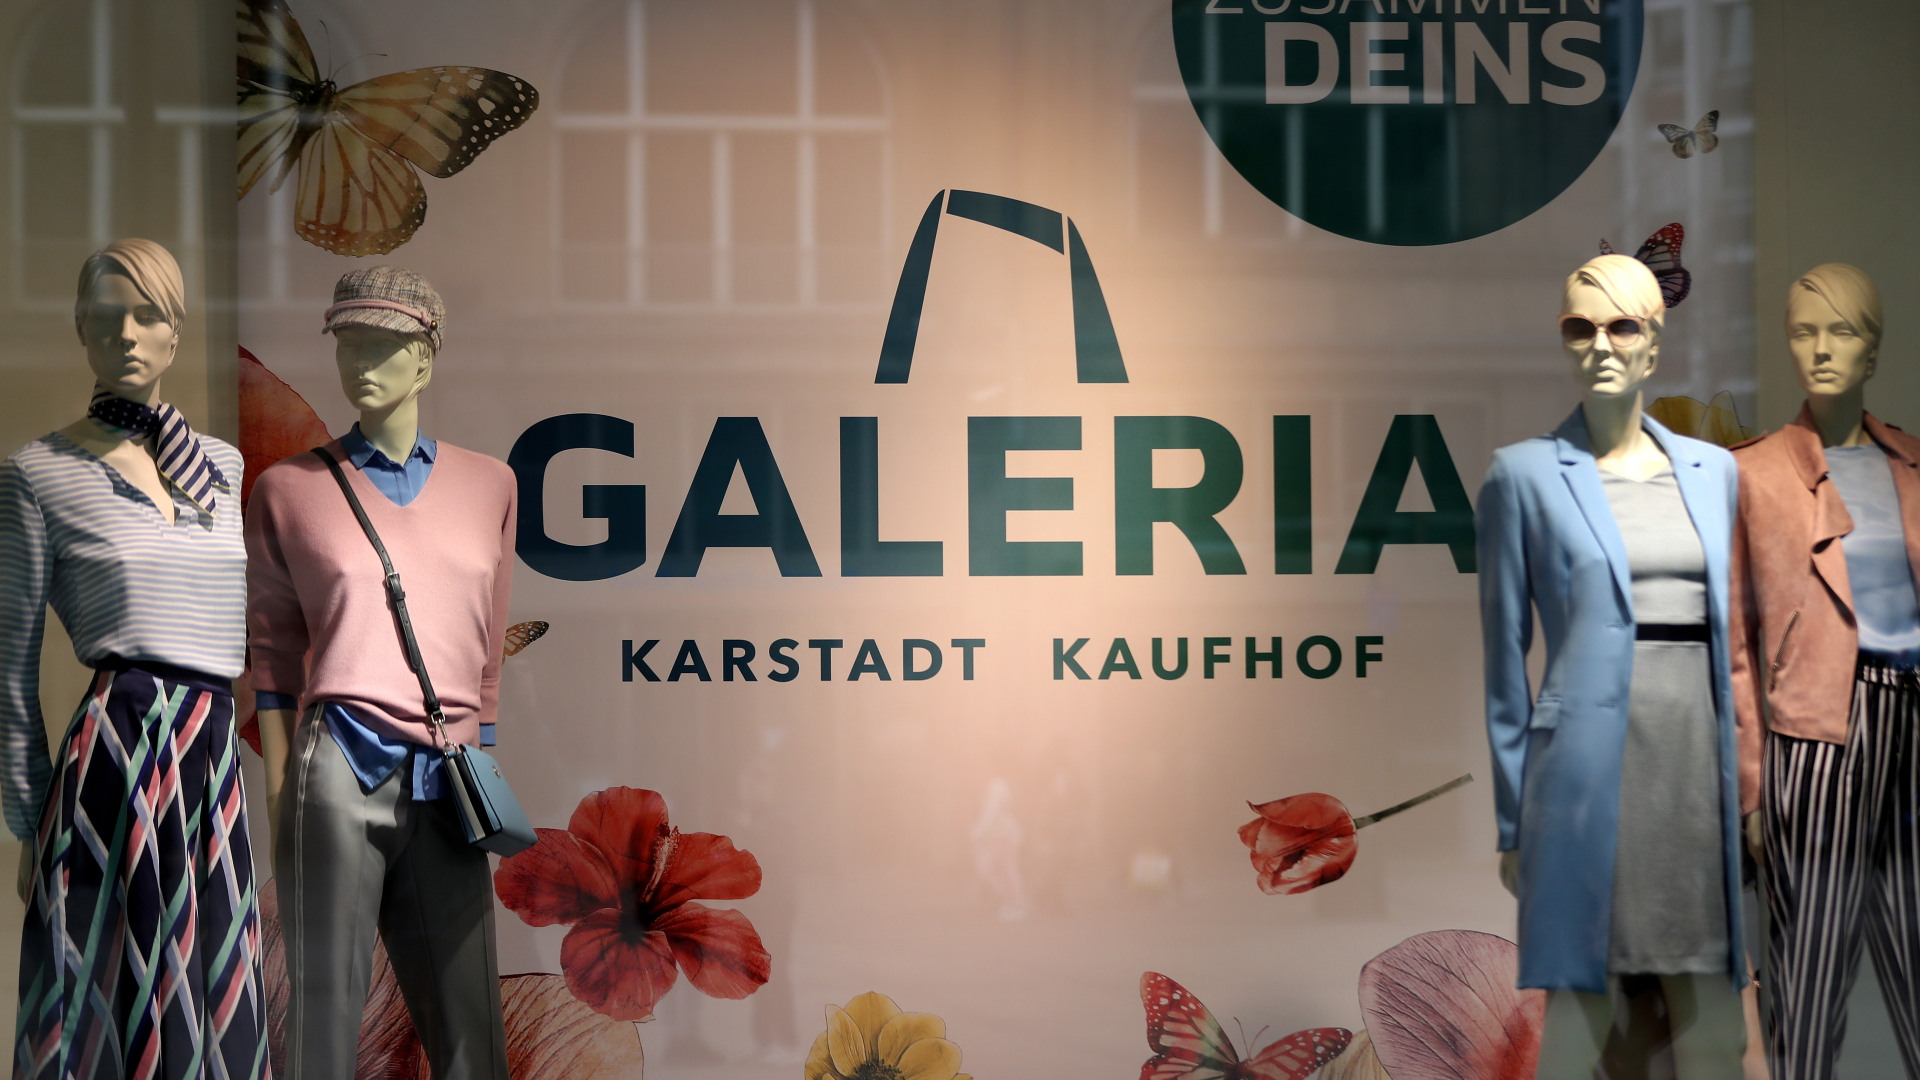 Eine Filiale von Galeria Karstadt Kaufhof in Essen | FRIEDEMANN VOGEL/EPA-EFE/Shutter